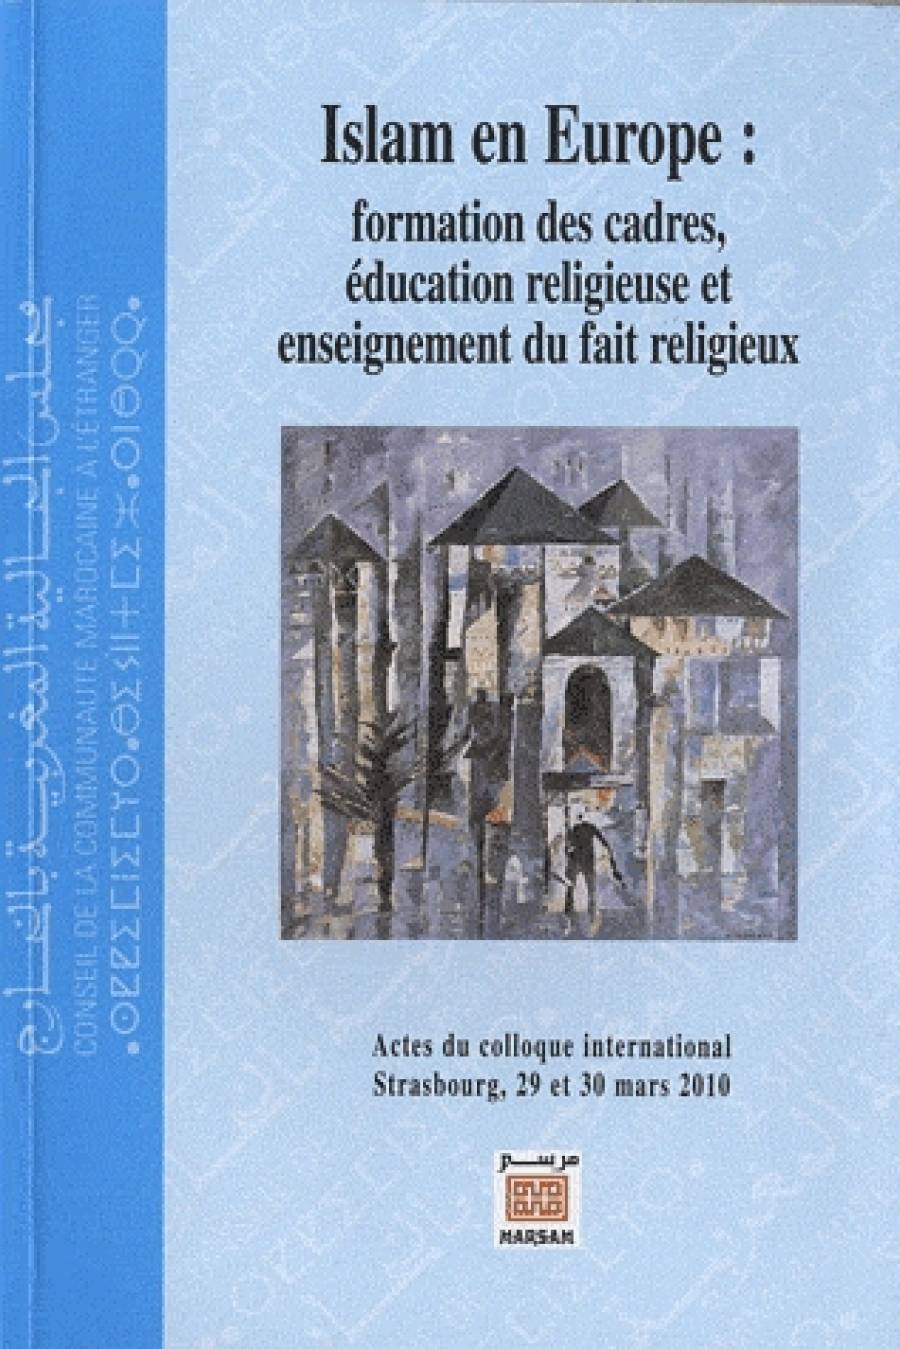 Islam en Europe : formation des cadres, éducation religieuse et enseignement du fait religieux